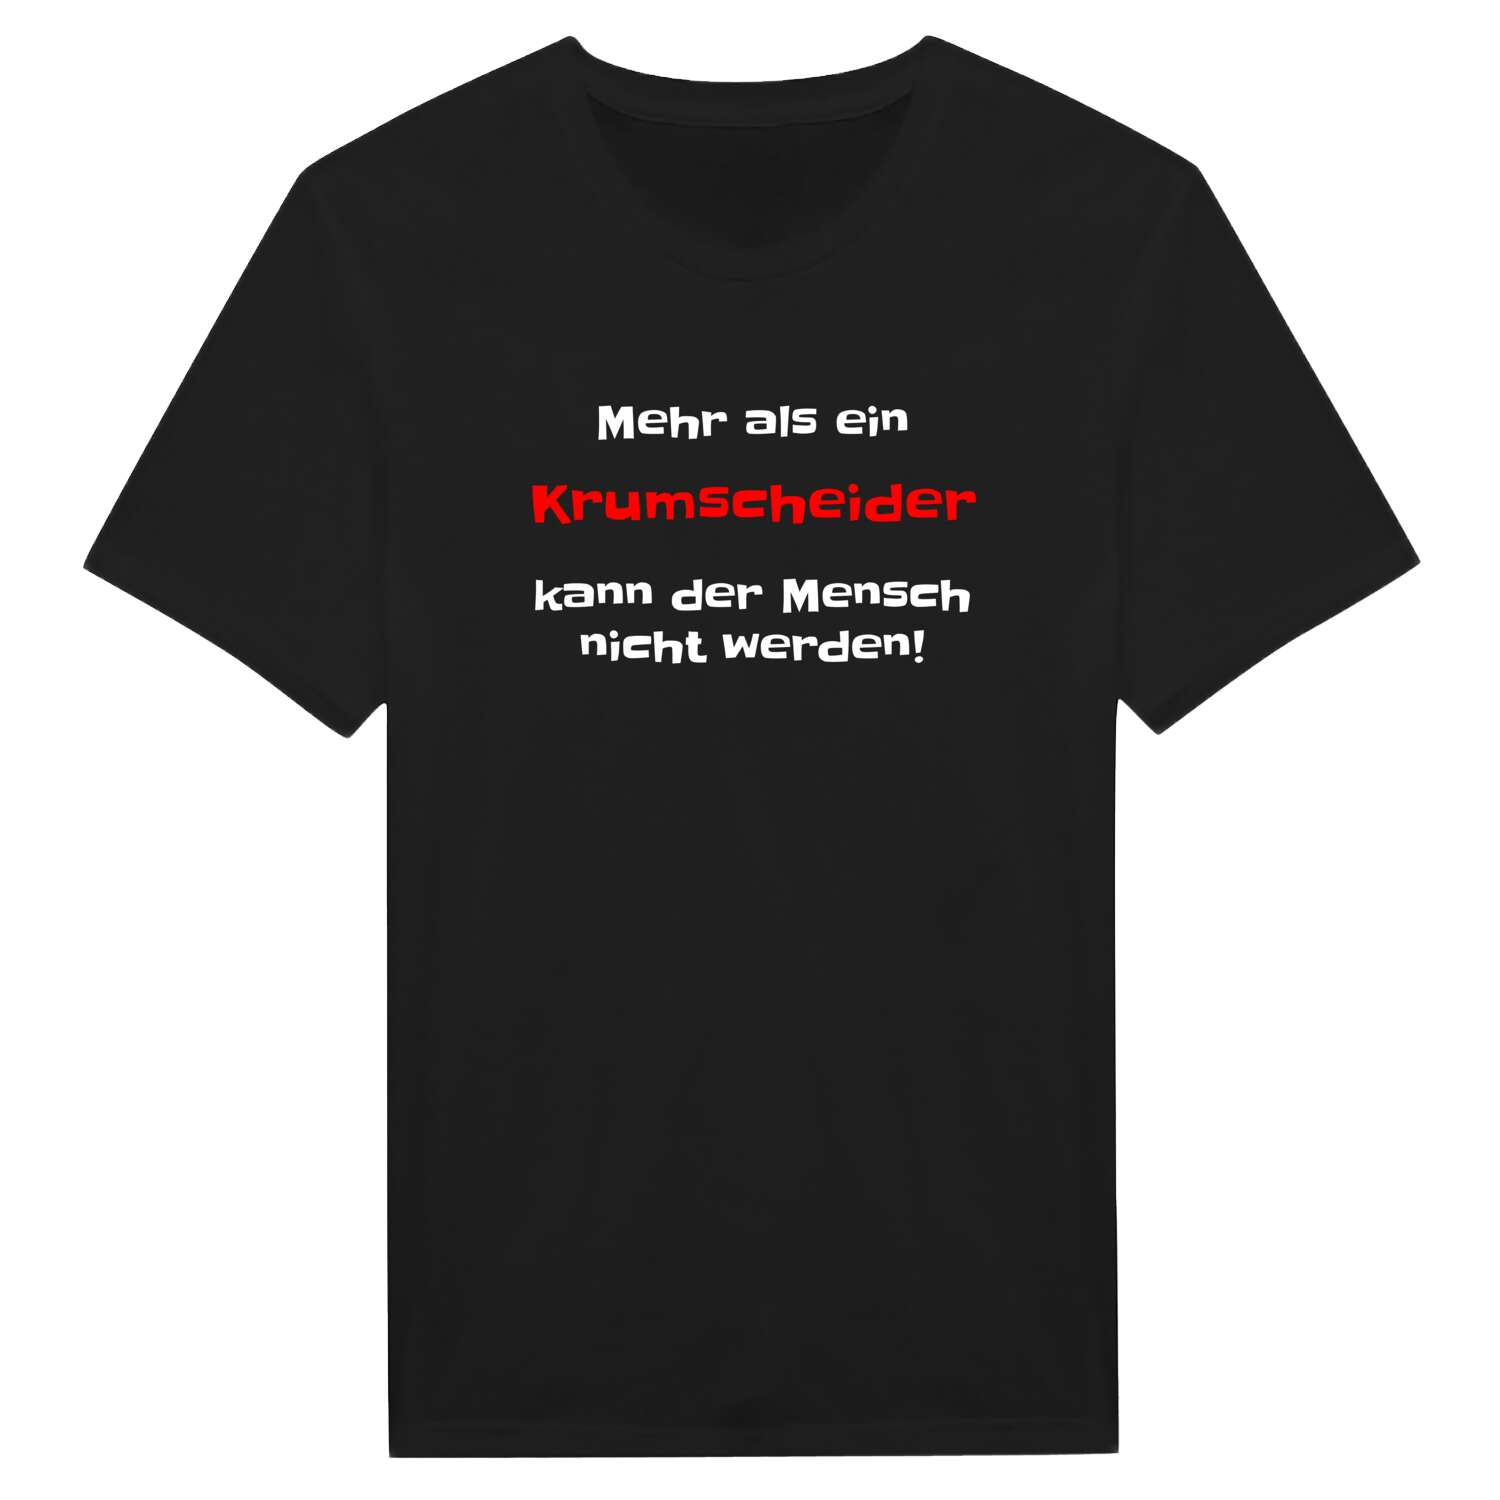 Krumscheid T-Shirt »Mehr als ein«